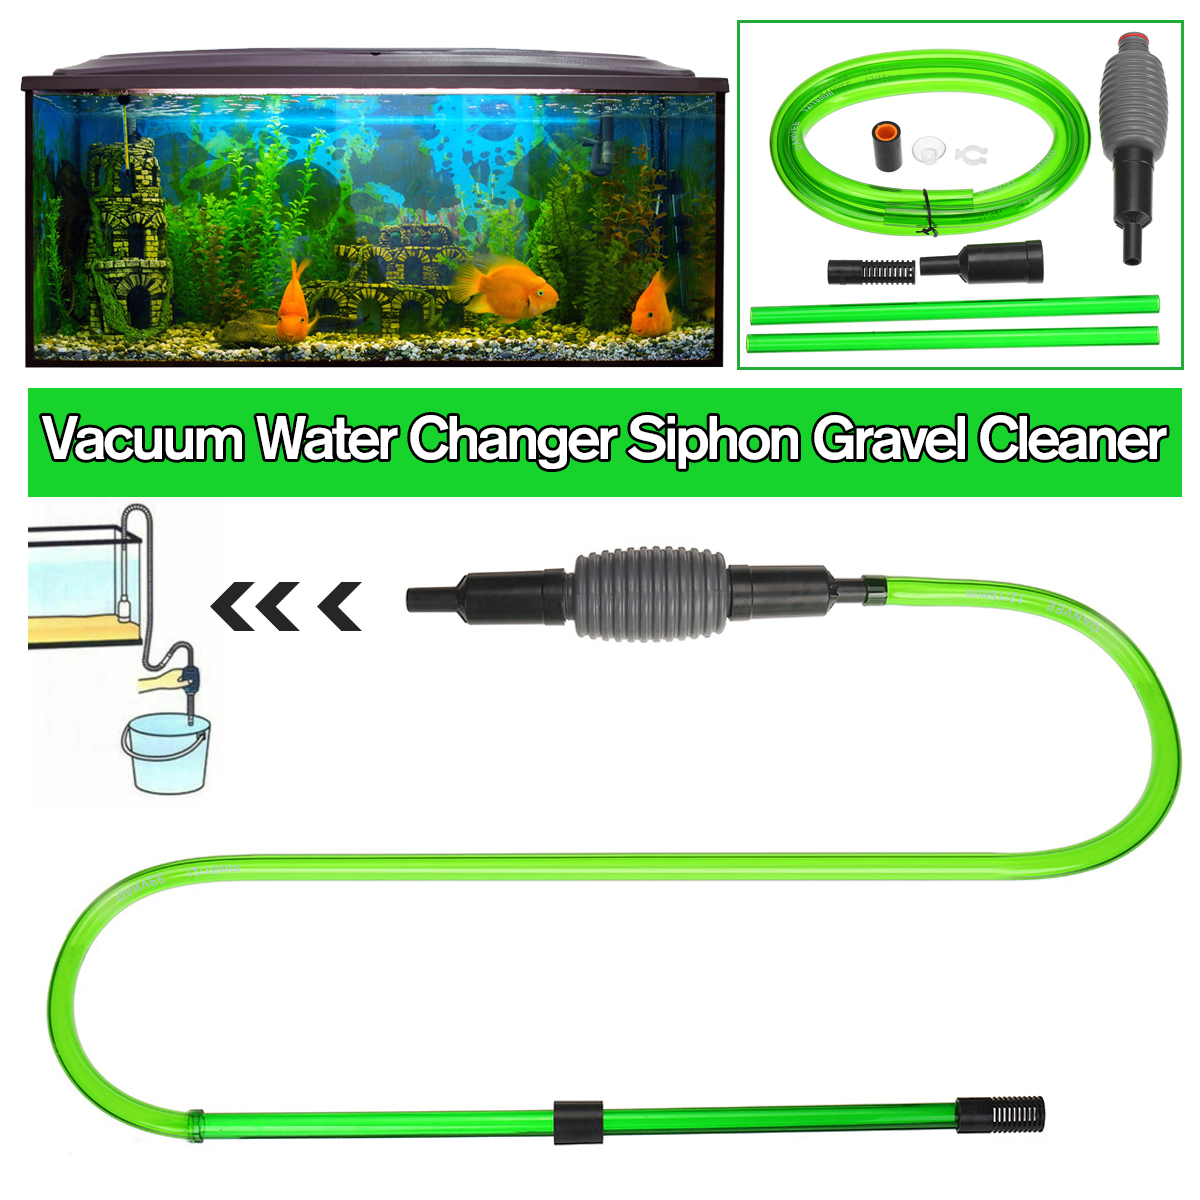 Manual-Aquarium-Fish-Tank-Siphon-Vacuum-Pump-Water-Changer-Gravel-Cleaner-1624919